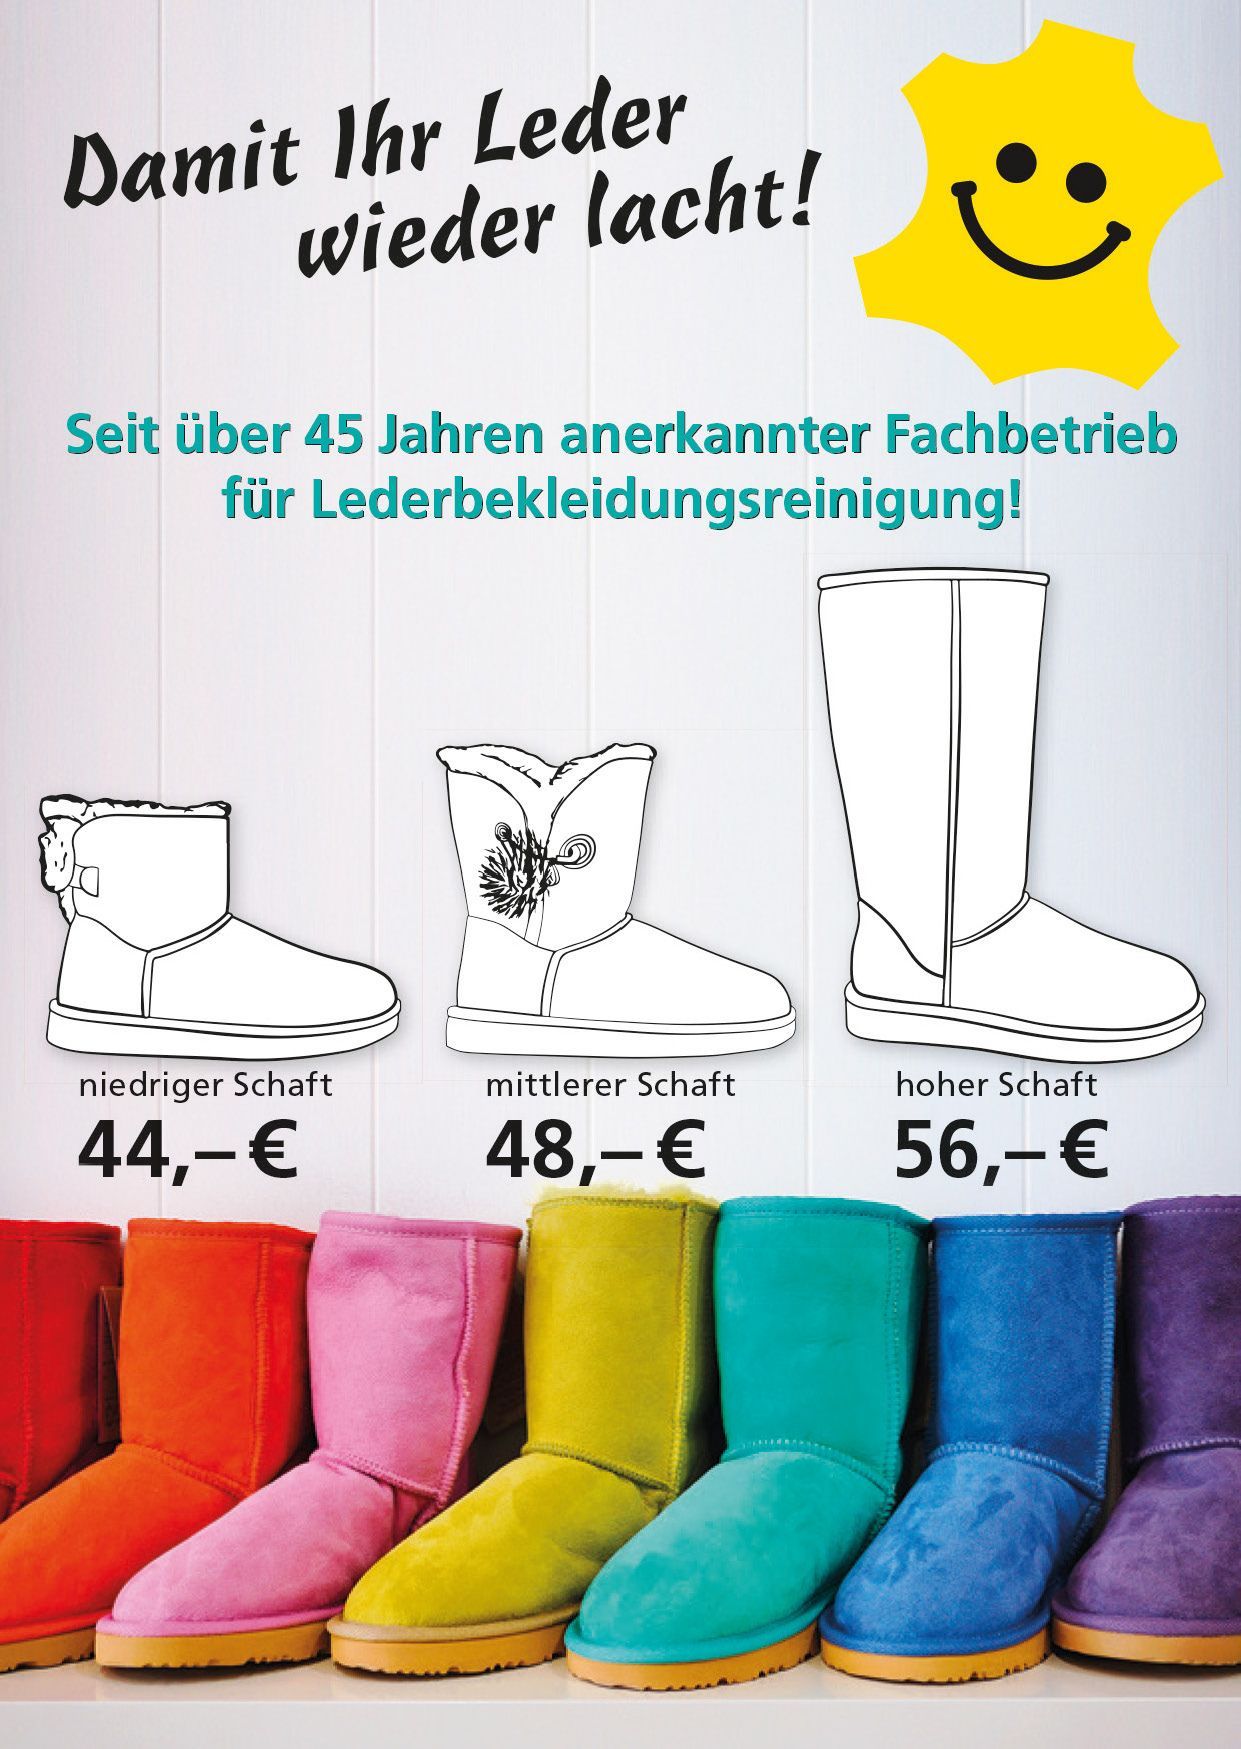 Textilservice und Berufskleidung Heinz Holst GmbH Piel Extras 07